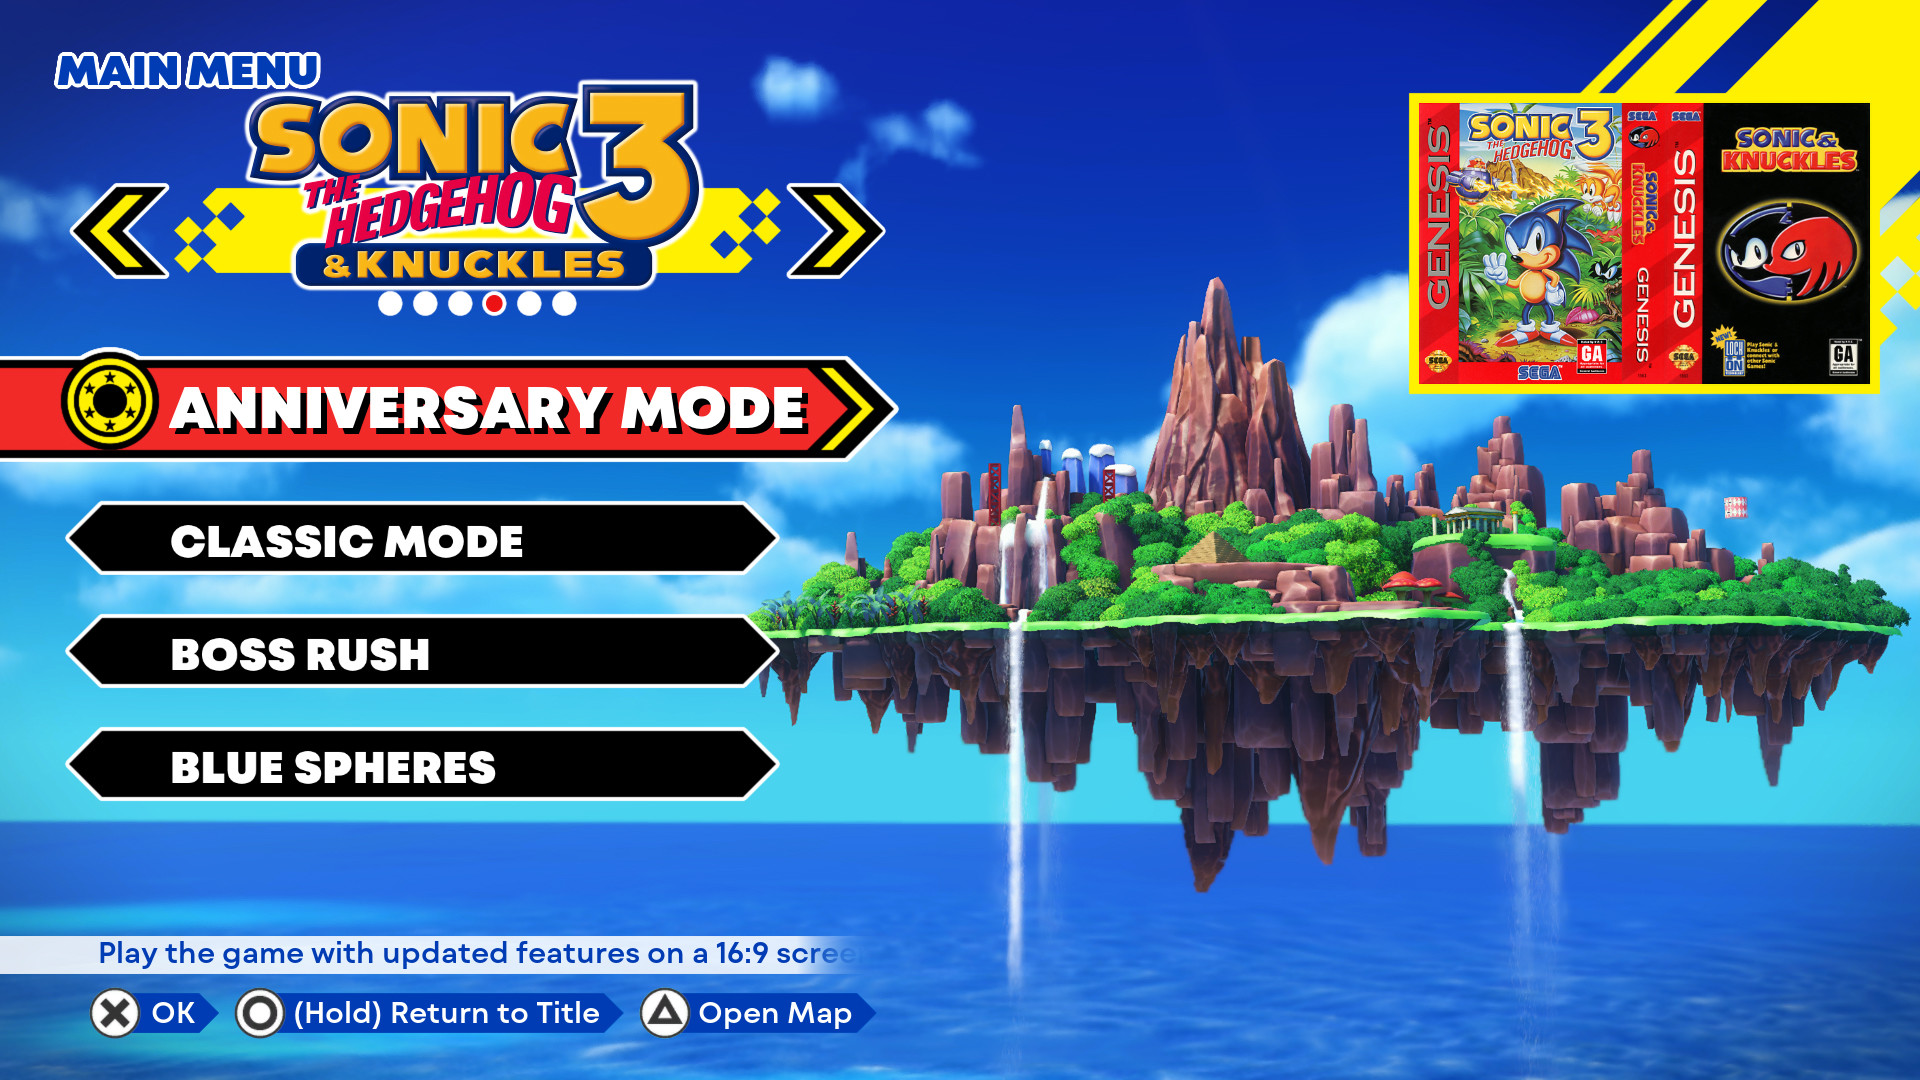 Hãy khám phá Sonic Origins trên Steam và trở về với nguồn gốc của huyền thoại Sonic. Trò chơi này là một trong những phiên bản Sonic đáng chơi nhất với những cải tiến về đồ họa và gameplay. Hãy cùng Sonic phiêu lưu trong thế giới đầy màu sắc và tình cảm. Translation: Discover Sonic Origins on Steam and go back to the origins of the legendary Sonic. This game is one of the most worthy versions of Sonic with improvements in graphics and gameplay. Join Sonic on his adventure in a colorful and emotional world.